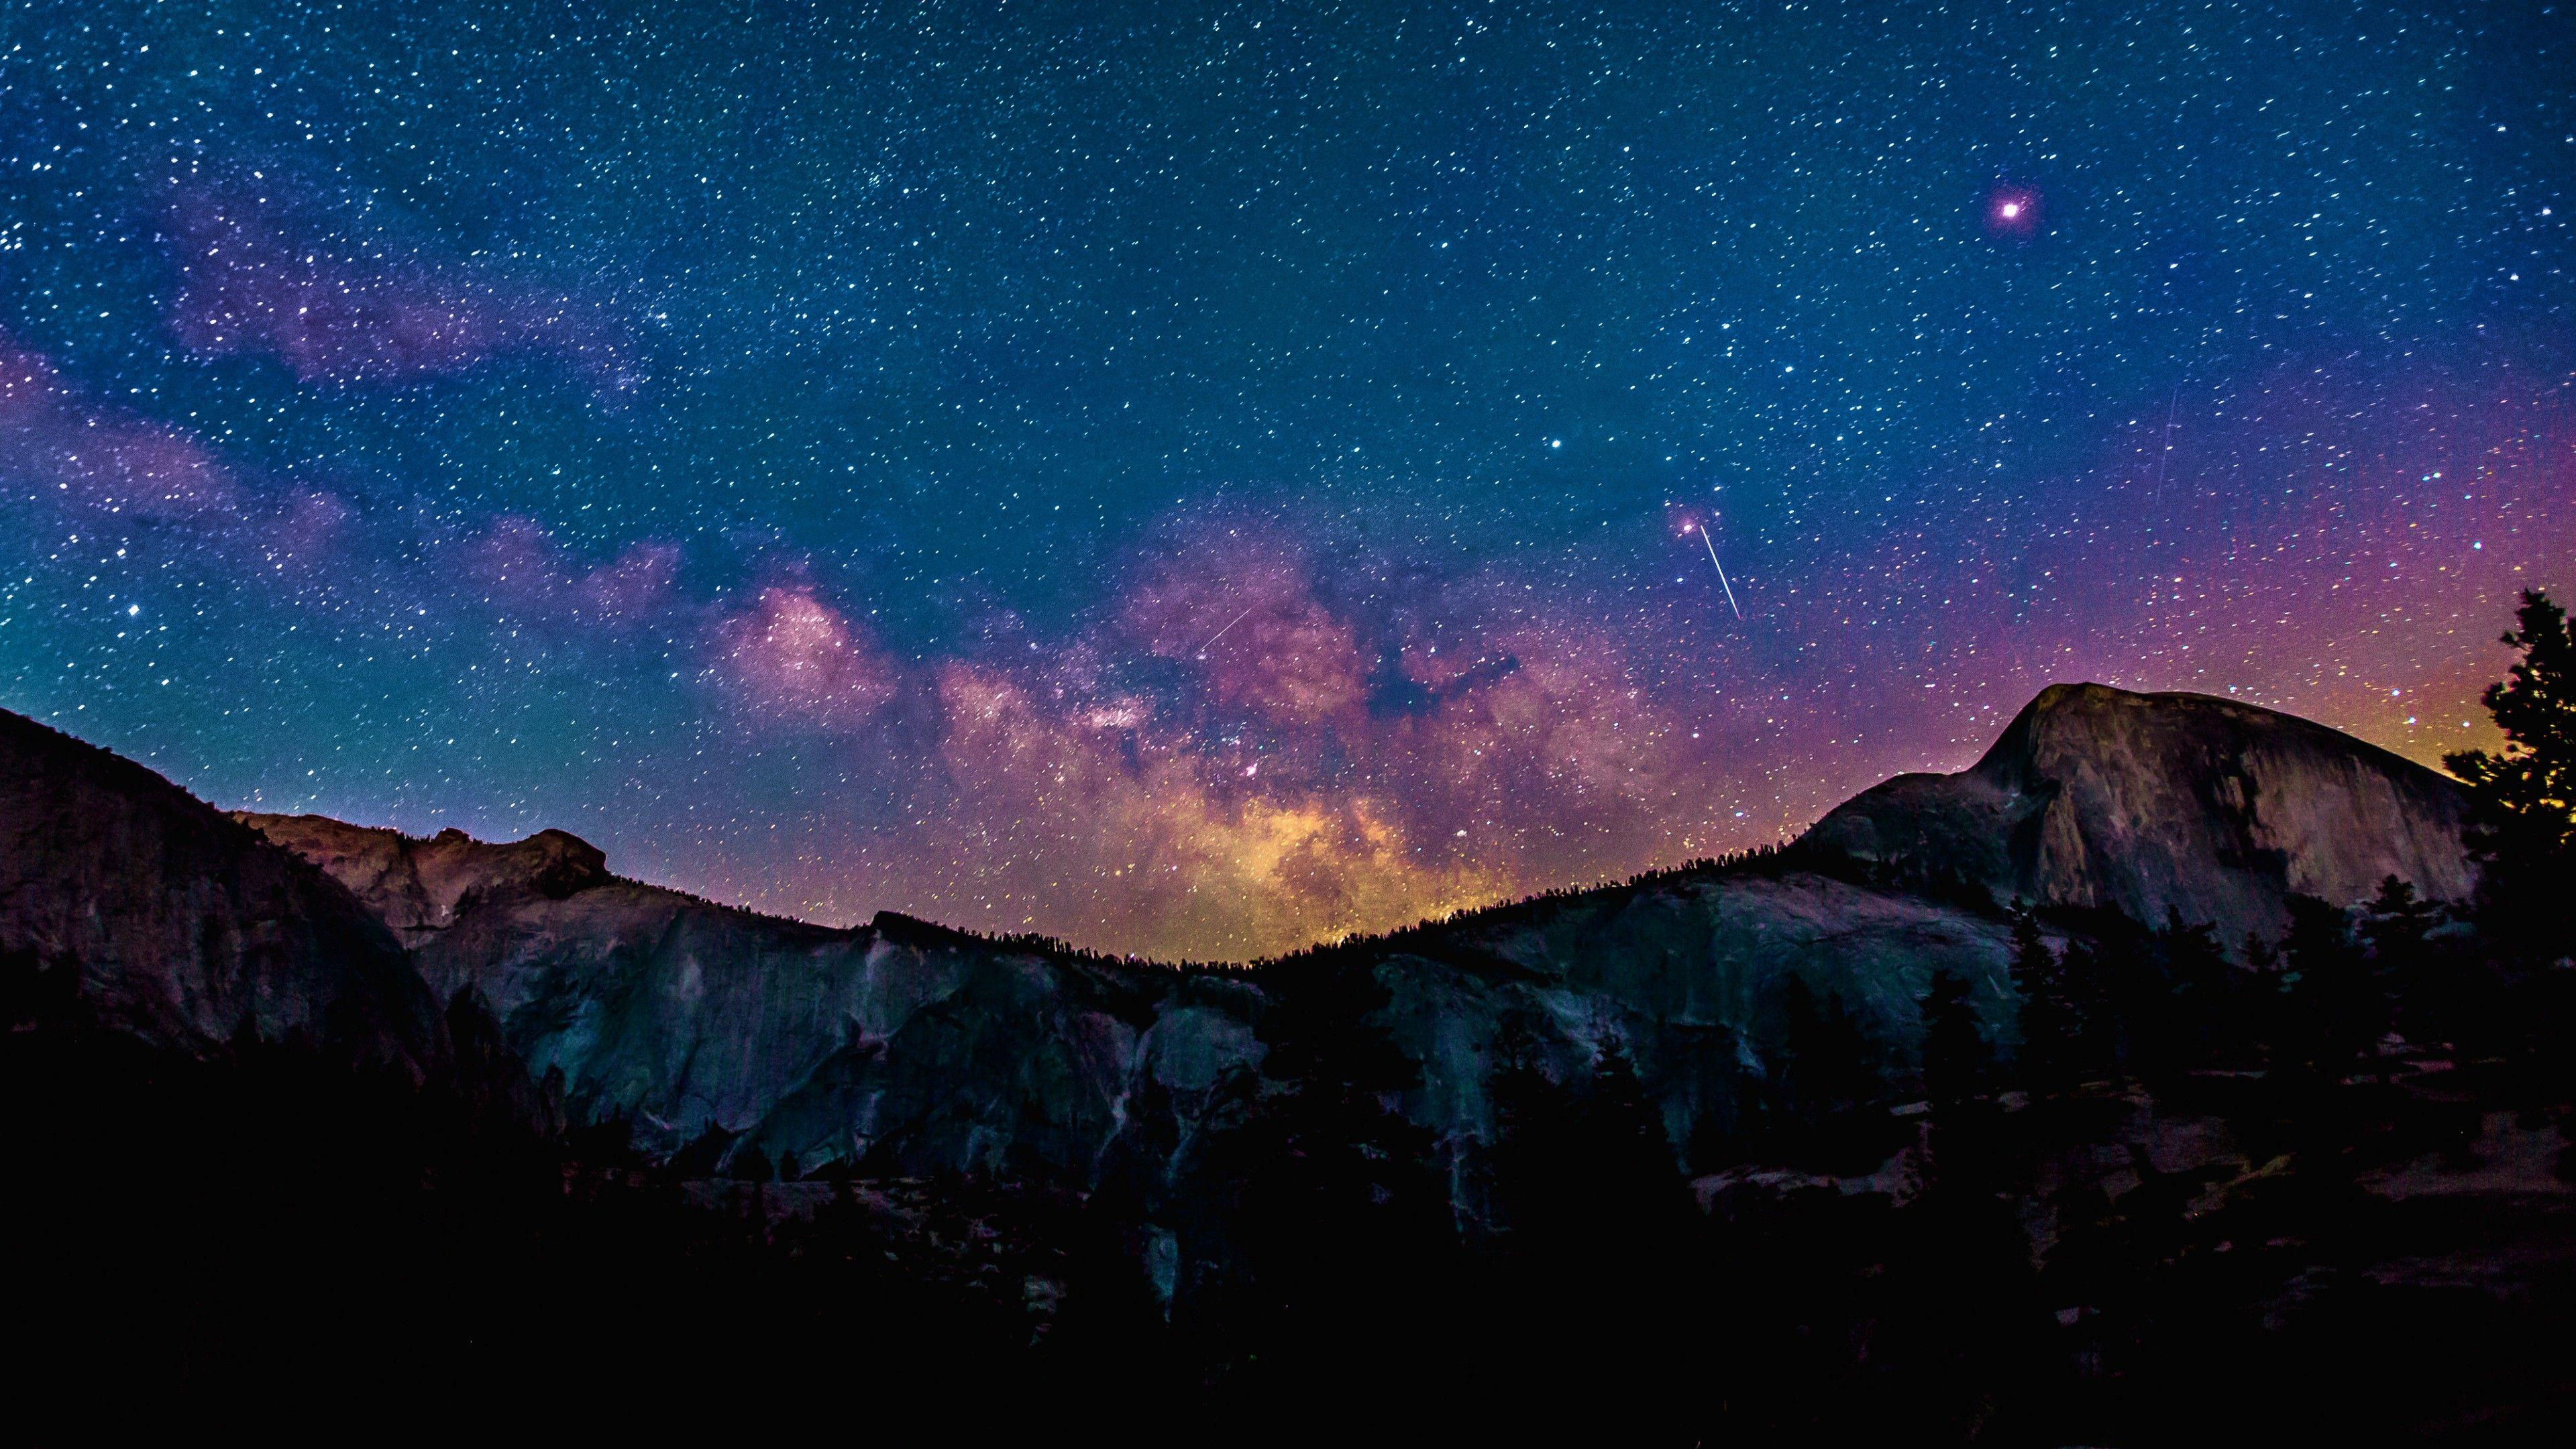 Milky Way 8k Wallpapers - Top Free Milky Way 8k Backgrounds